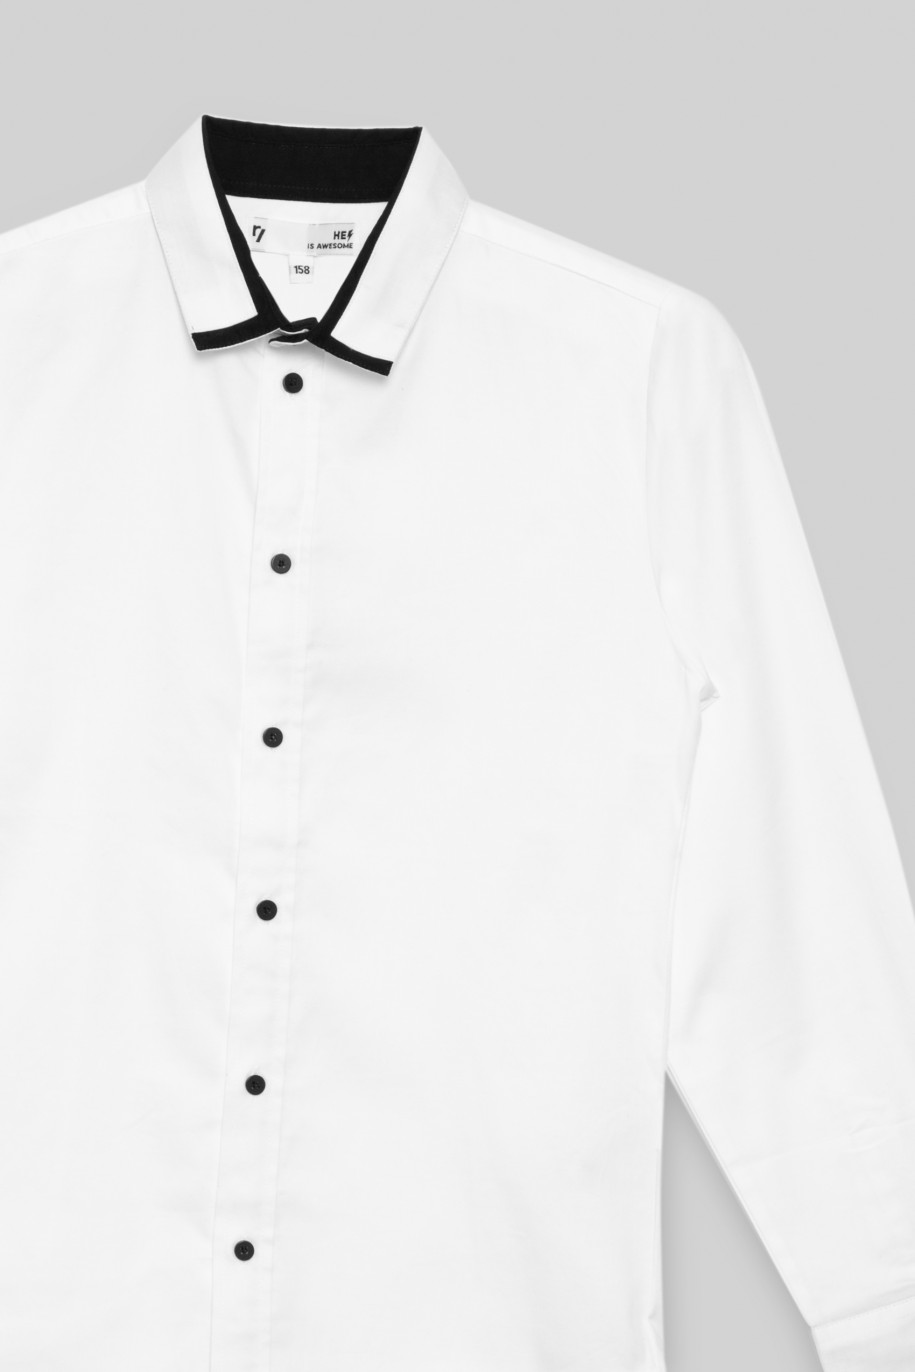 Biała elegancka koszula dla chłopaka - 32682